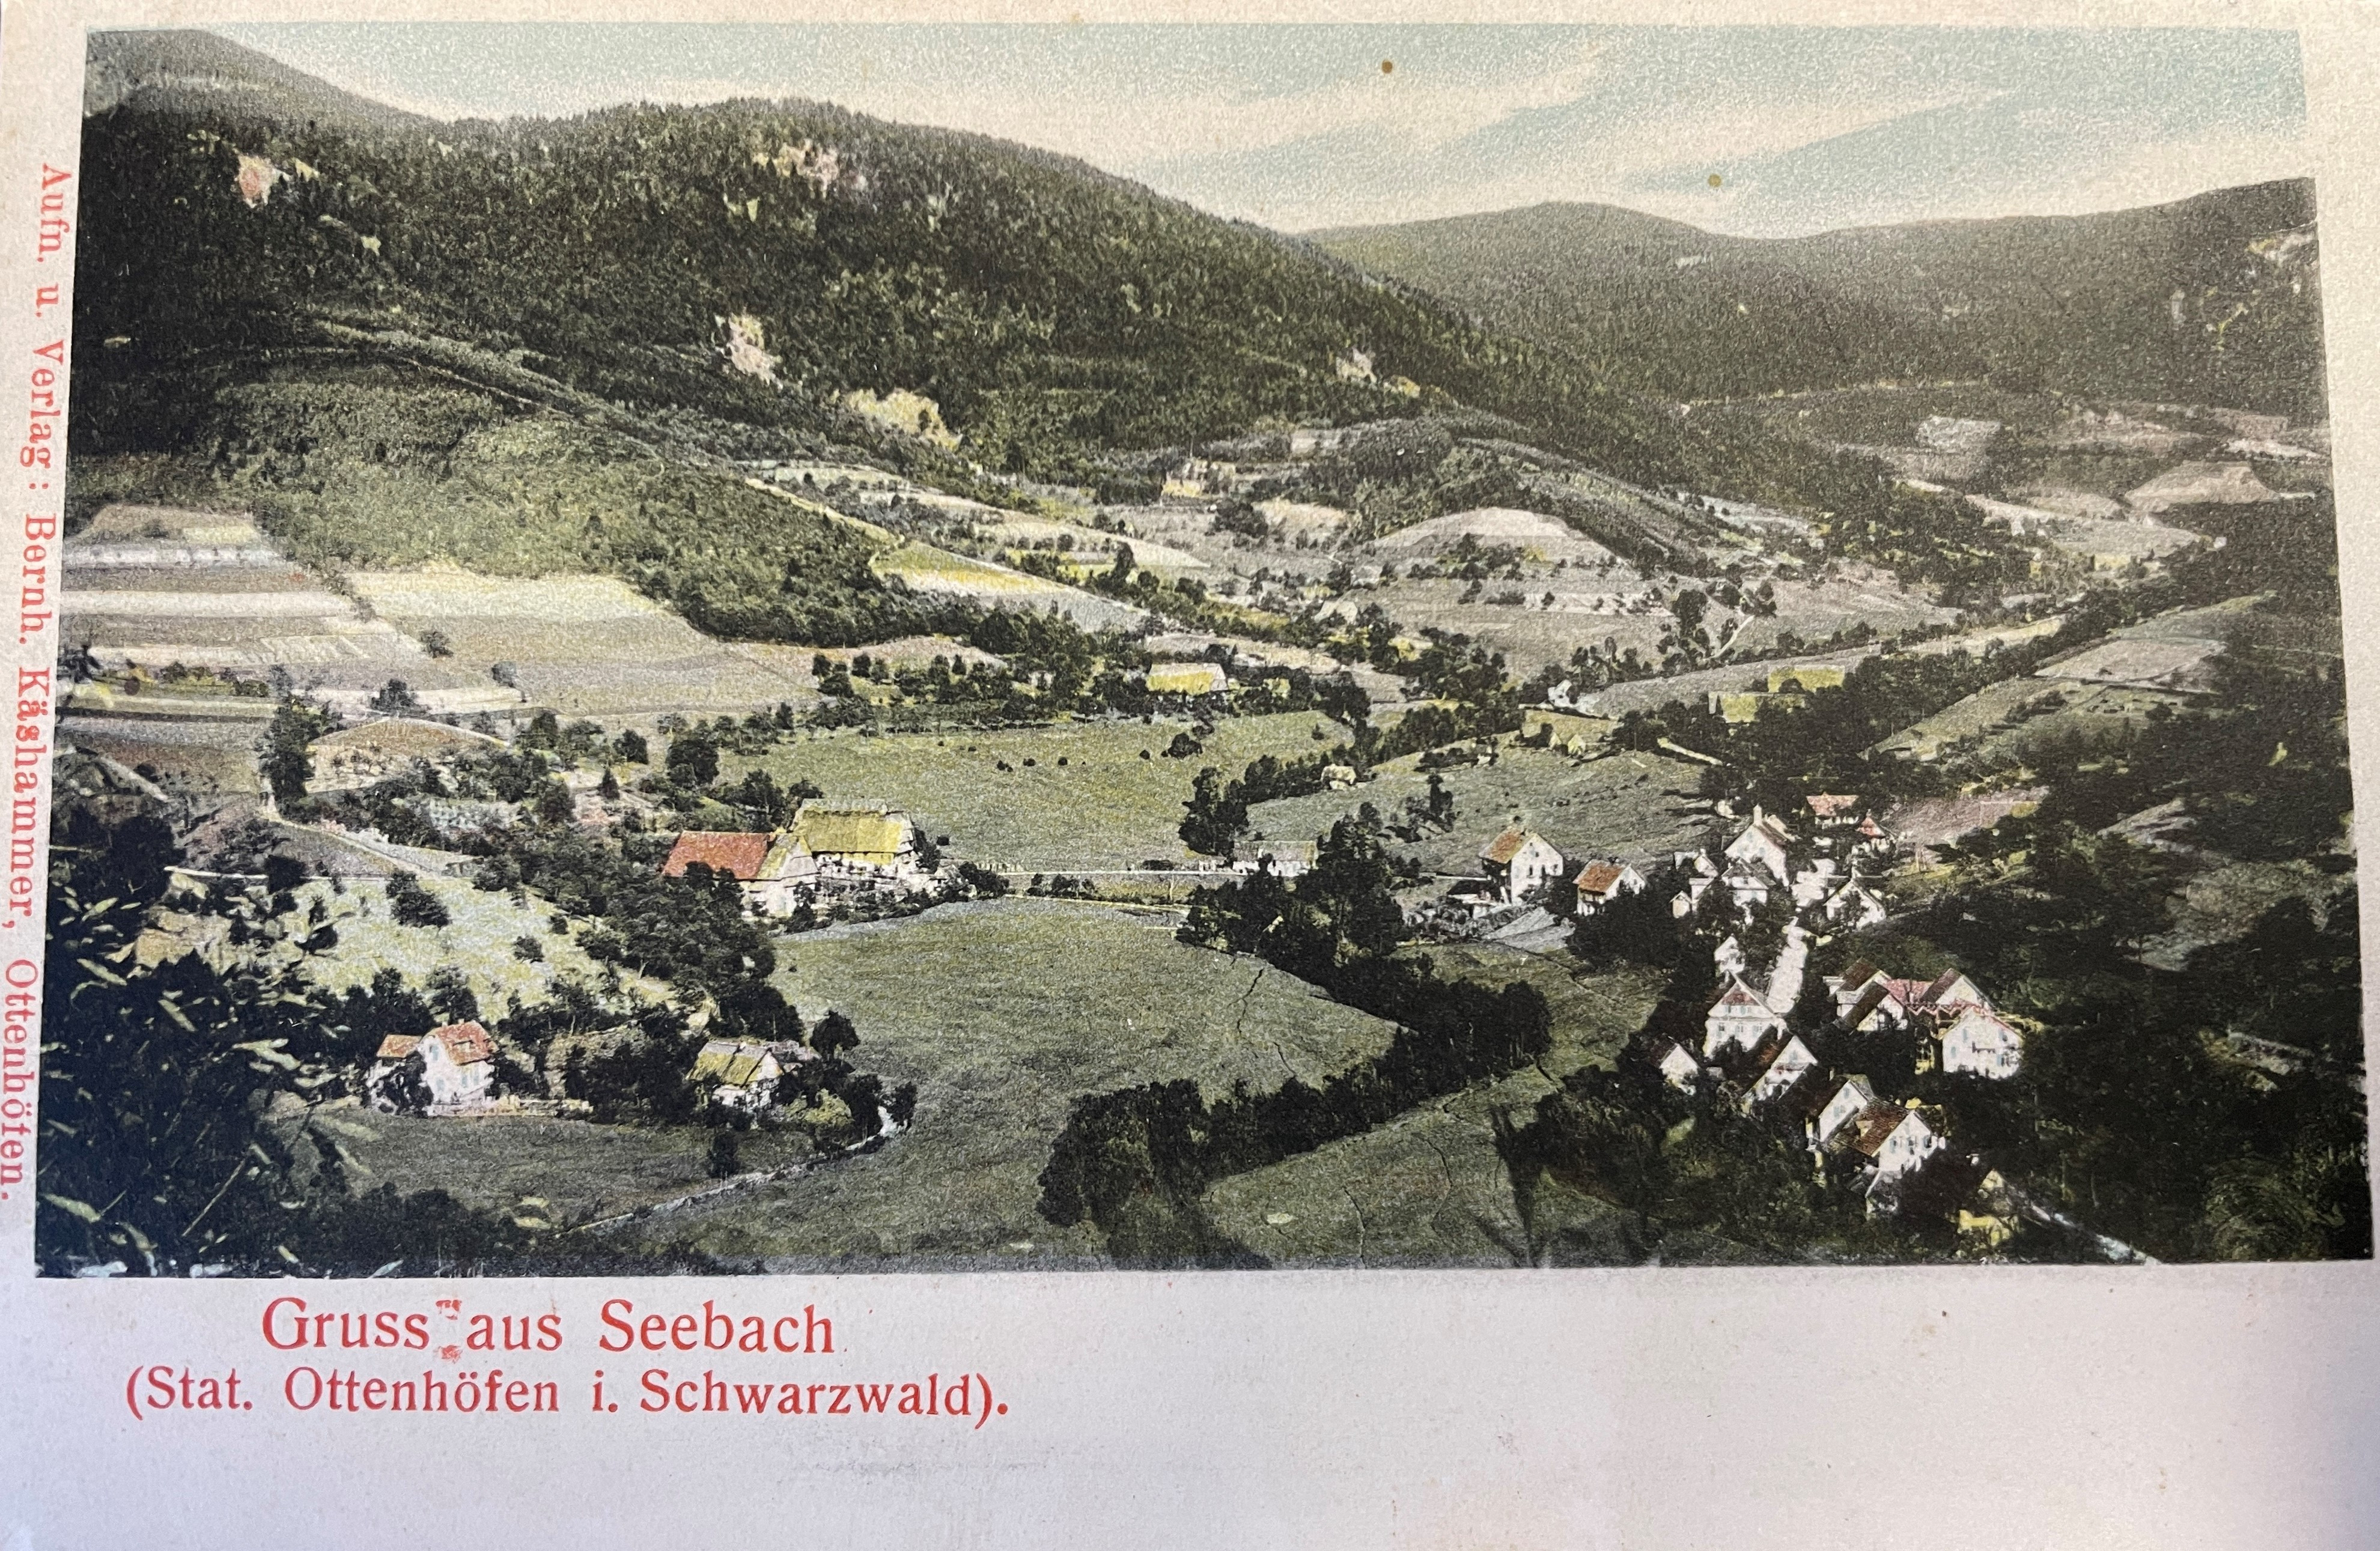                                                     Ortsbild um 1900                                    